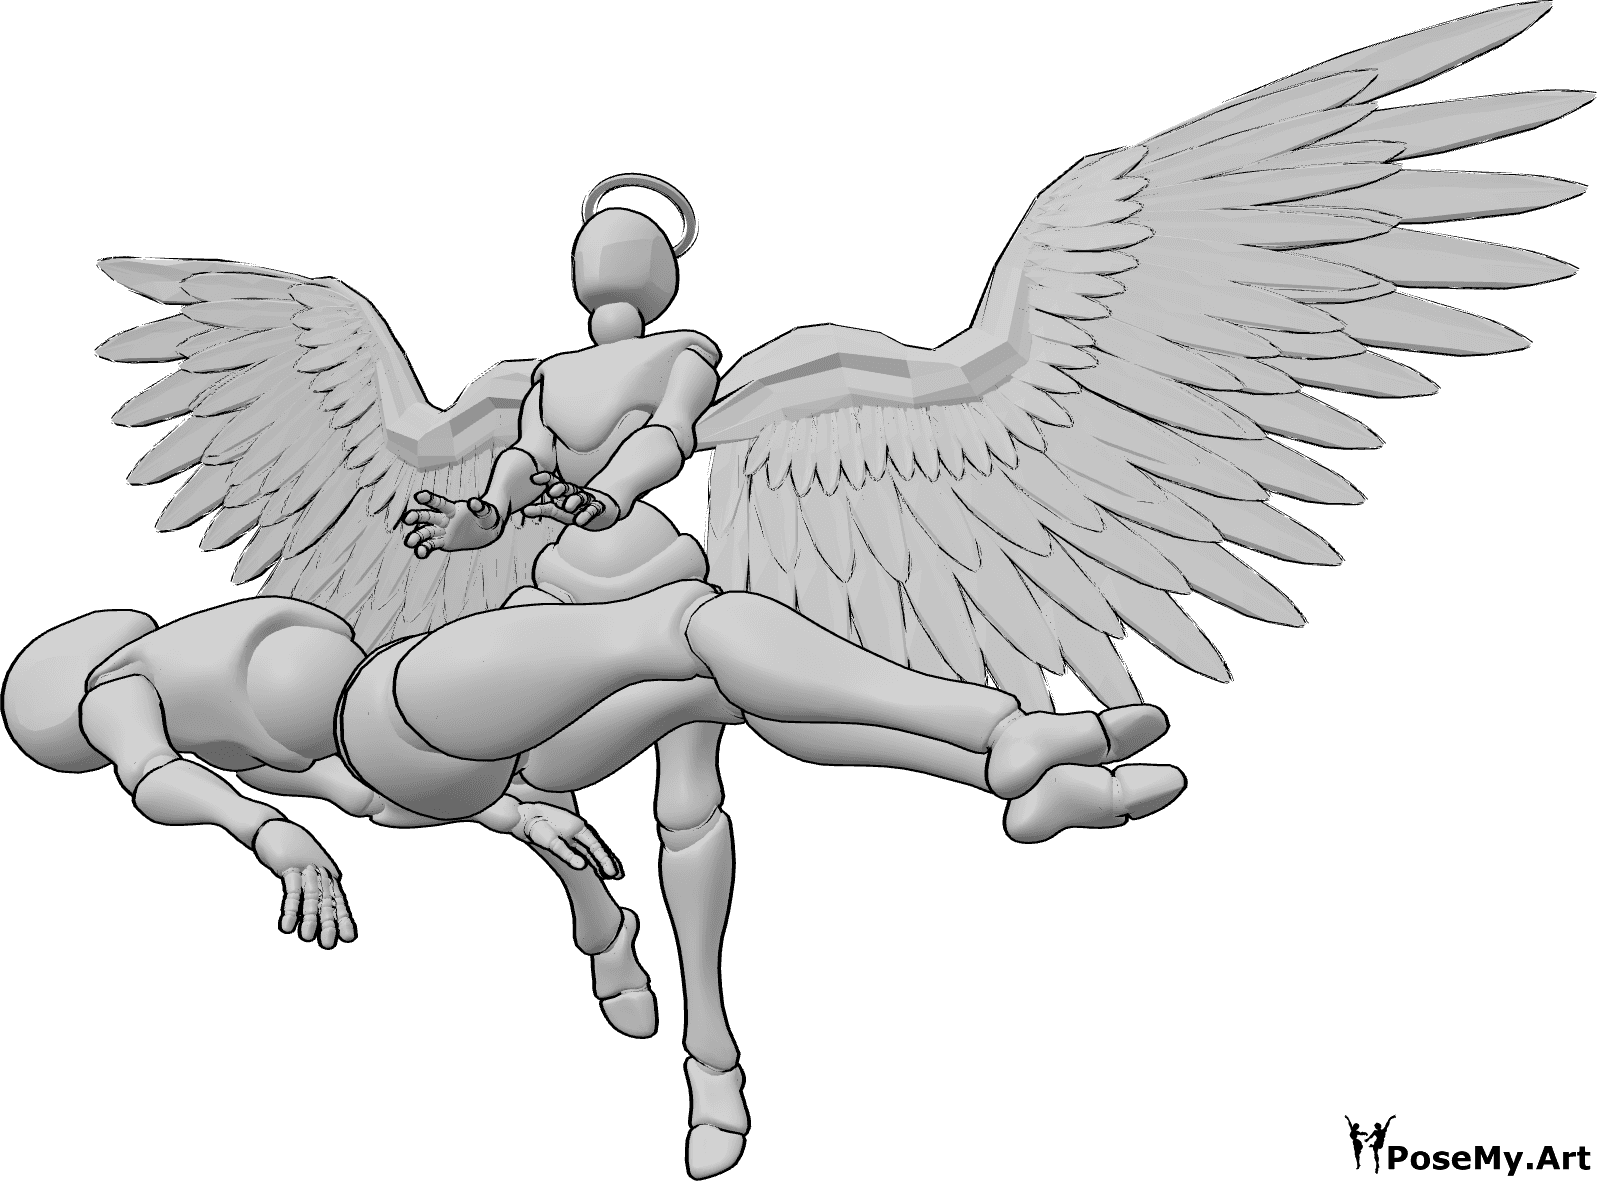 Posen-Referenz- Engel-Heiler-Pose - Ein weiblicher Heilengel schwebt und wirkt einen Heilzauber auf die verletzte Frau